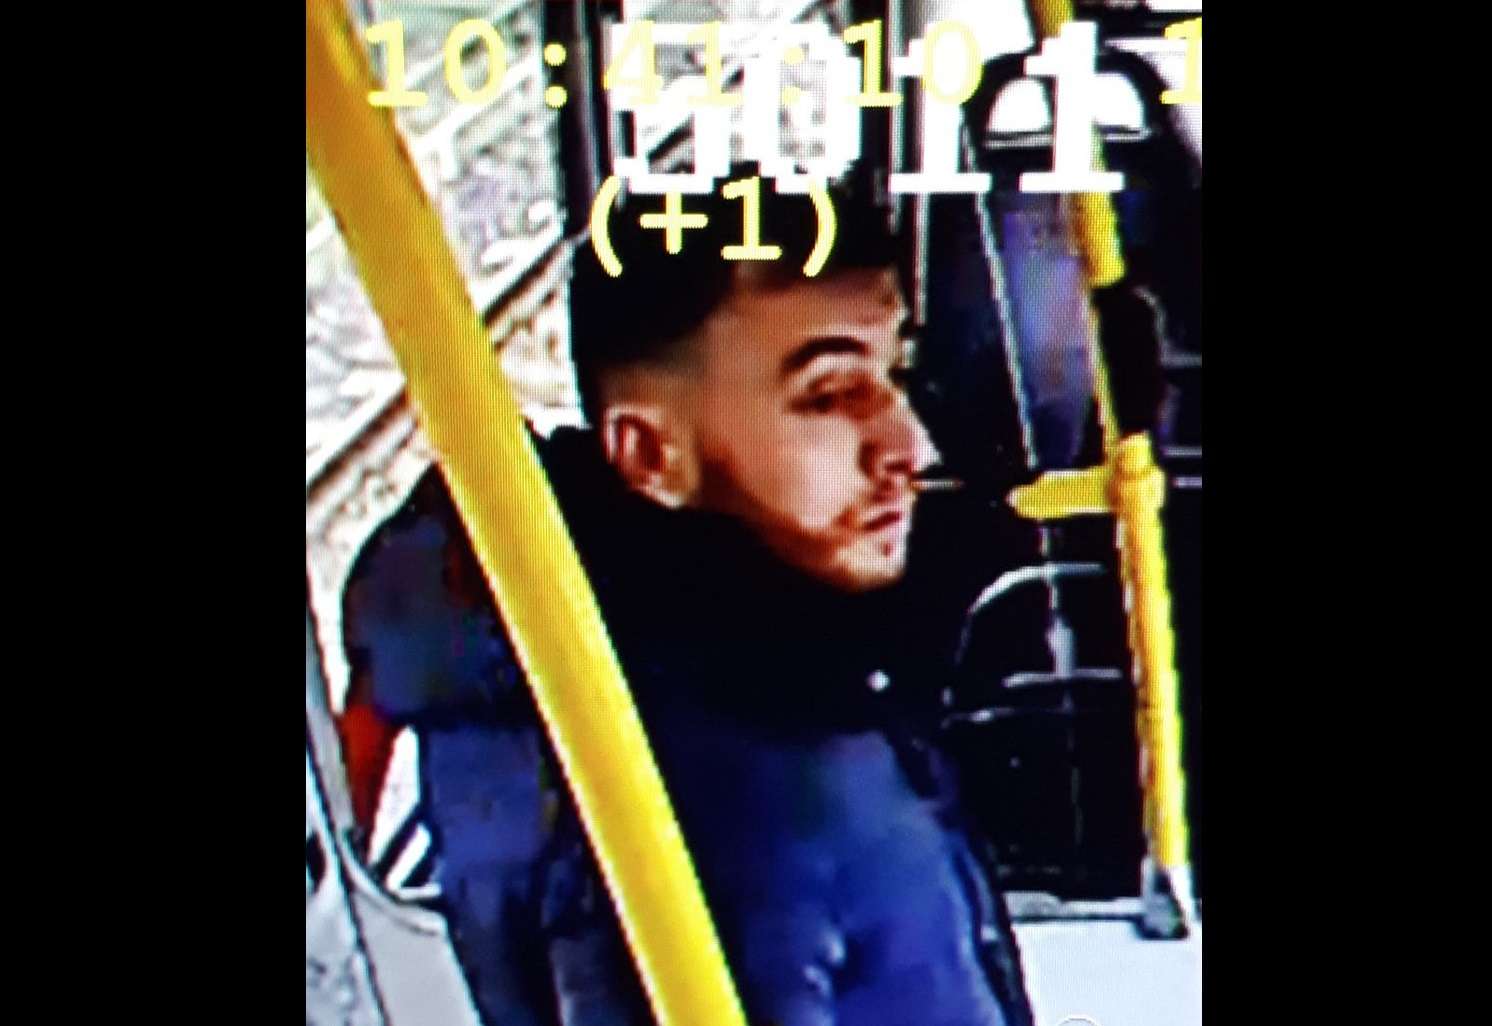 Gökmen Tanis, un hombre de 37 años nacido en Turquía, como principal sospechoso del tiroteo este lunes en un tranvía en la ciudad de Utrecht. Foto: @PolitieUtrecht  